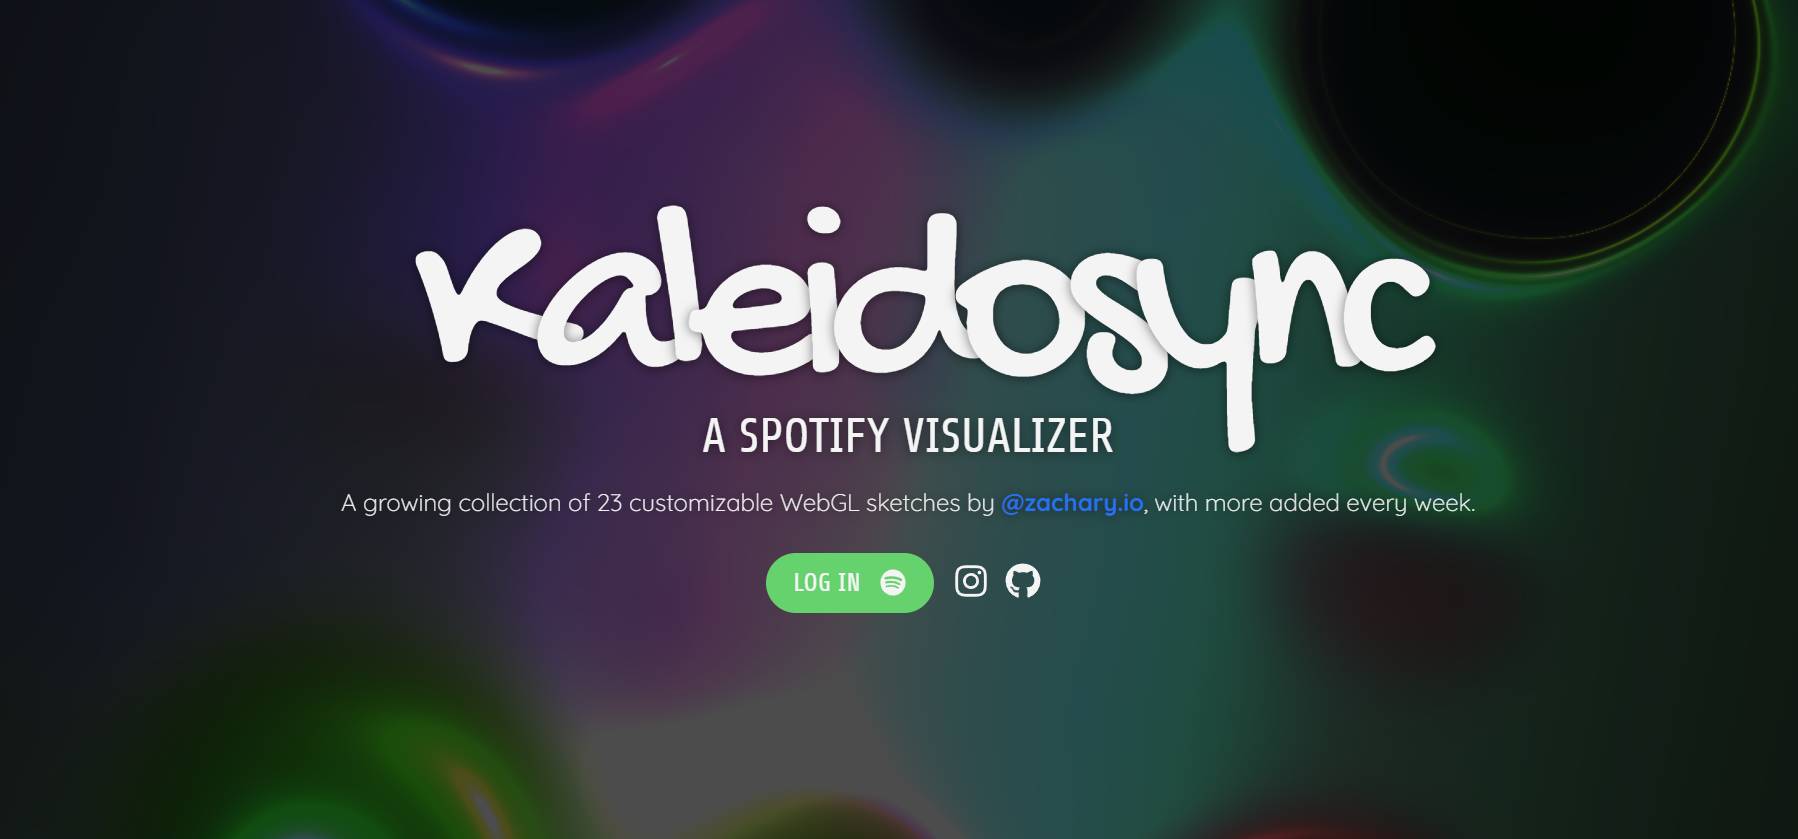 Das Spotify Visualizer namens Kaleidosync Visualizer kann im Web verwendet werden